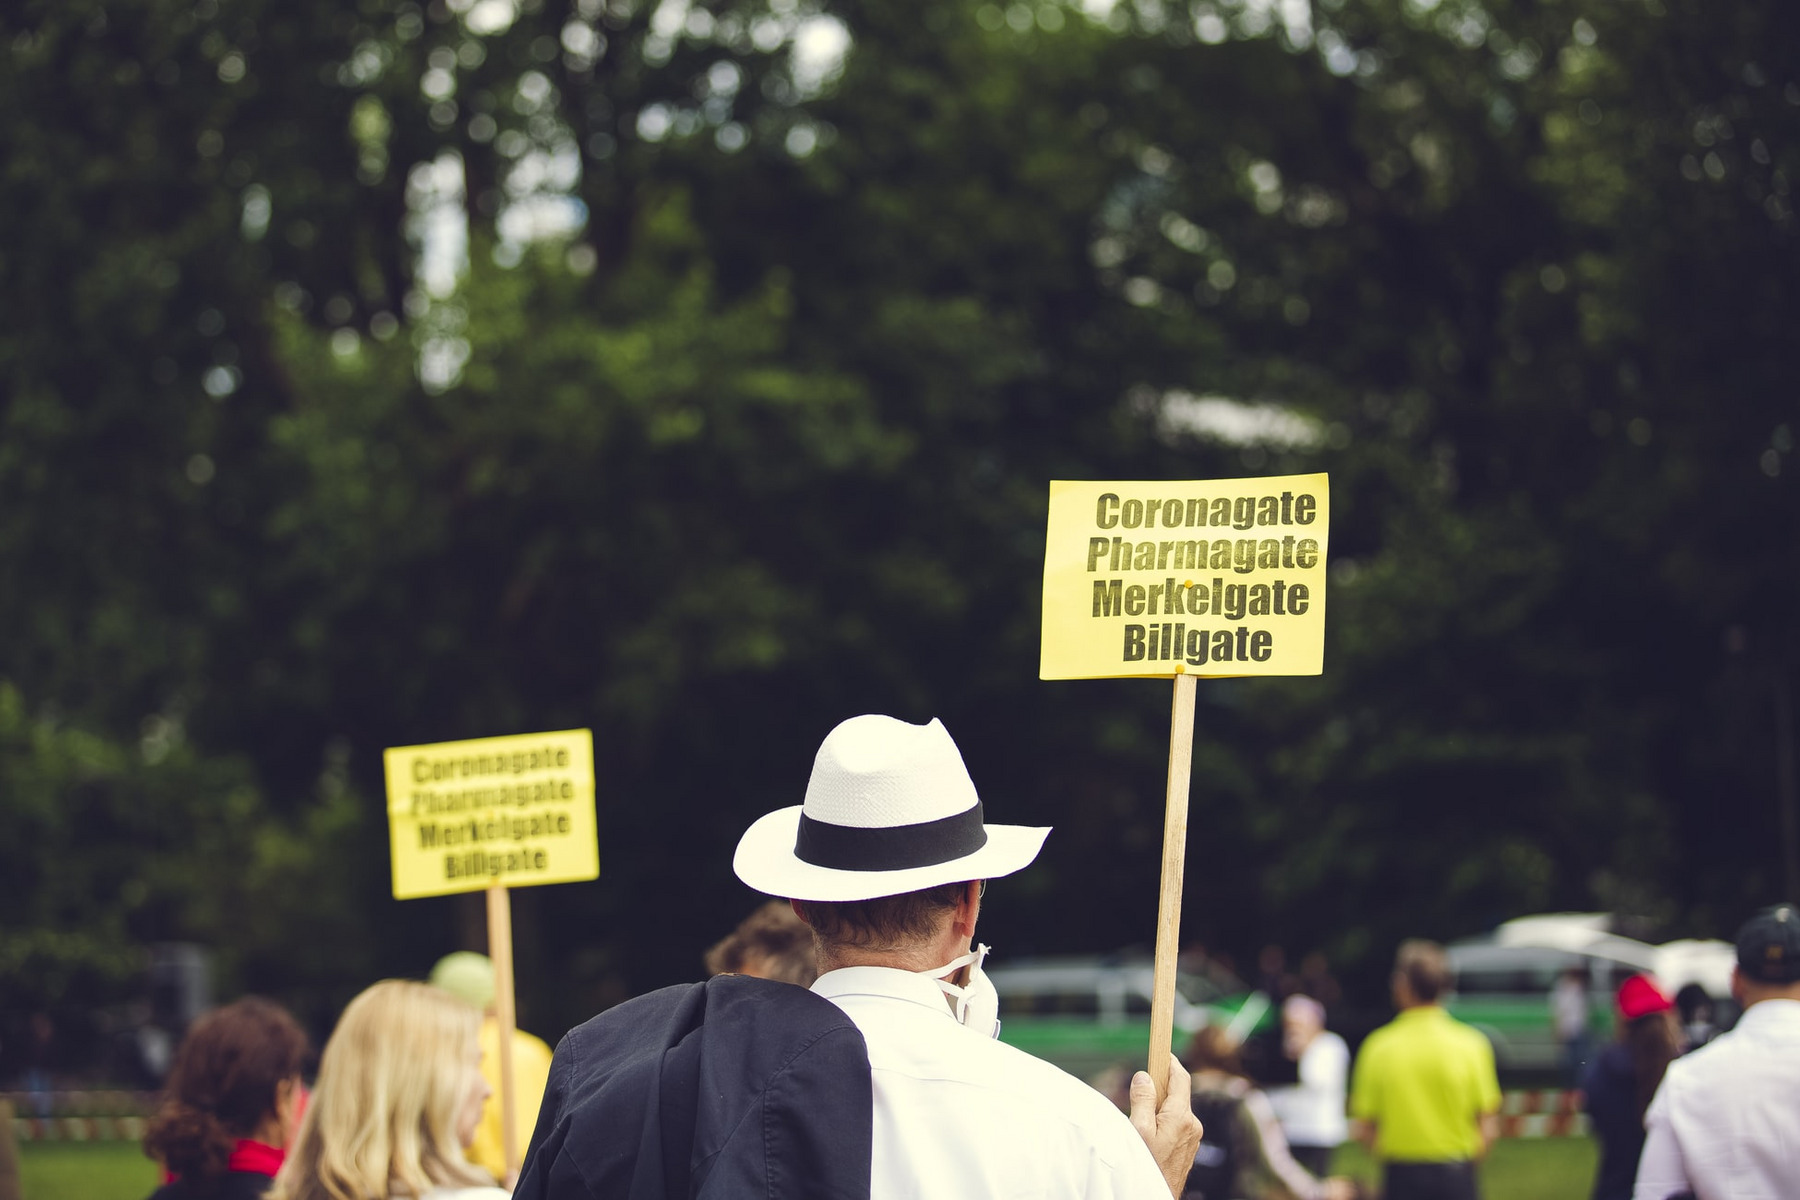 Mann mit Hut hält ein Schild mit der Aufschrift "Coronagate, Pharmagate, Merkelgate, Billgate"